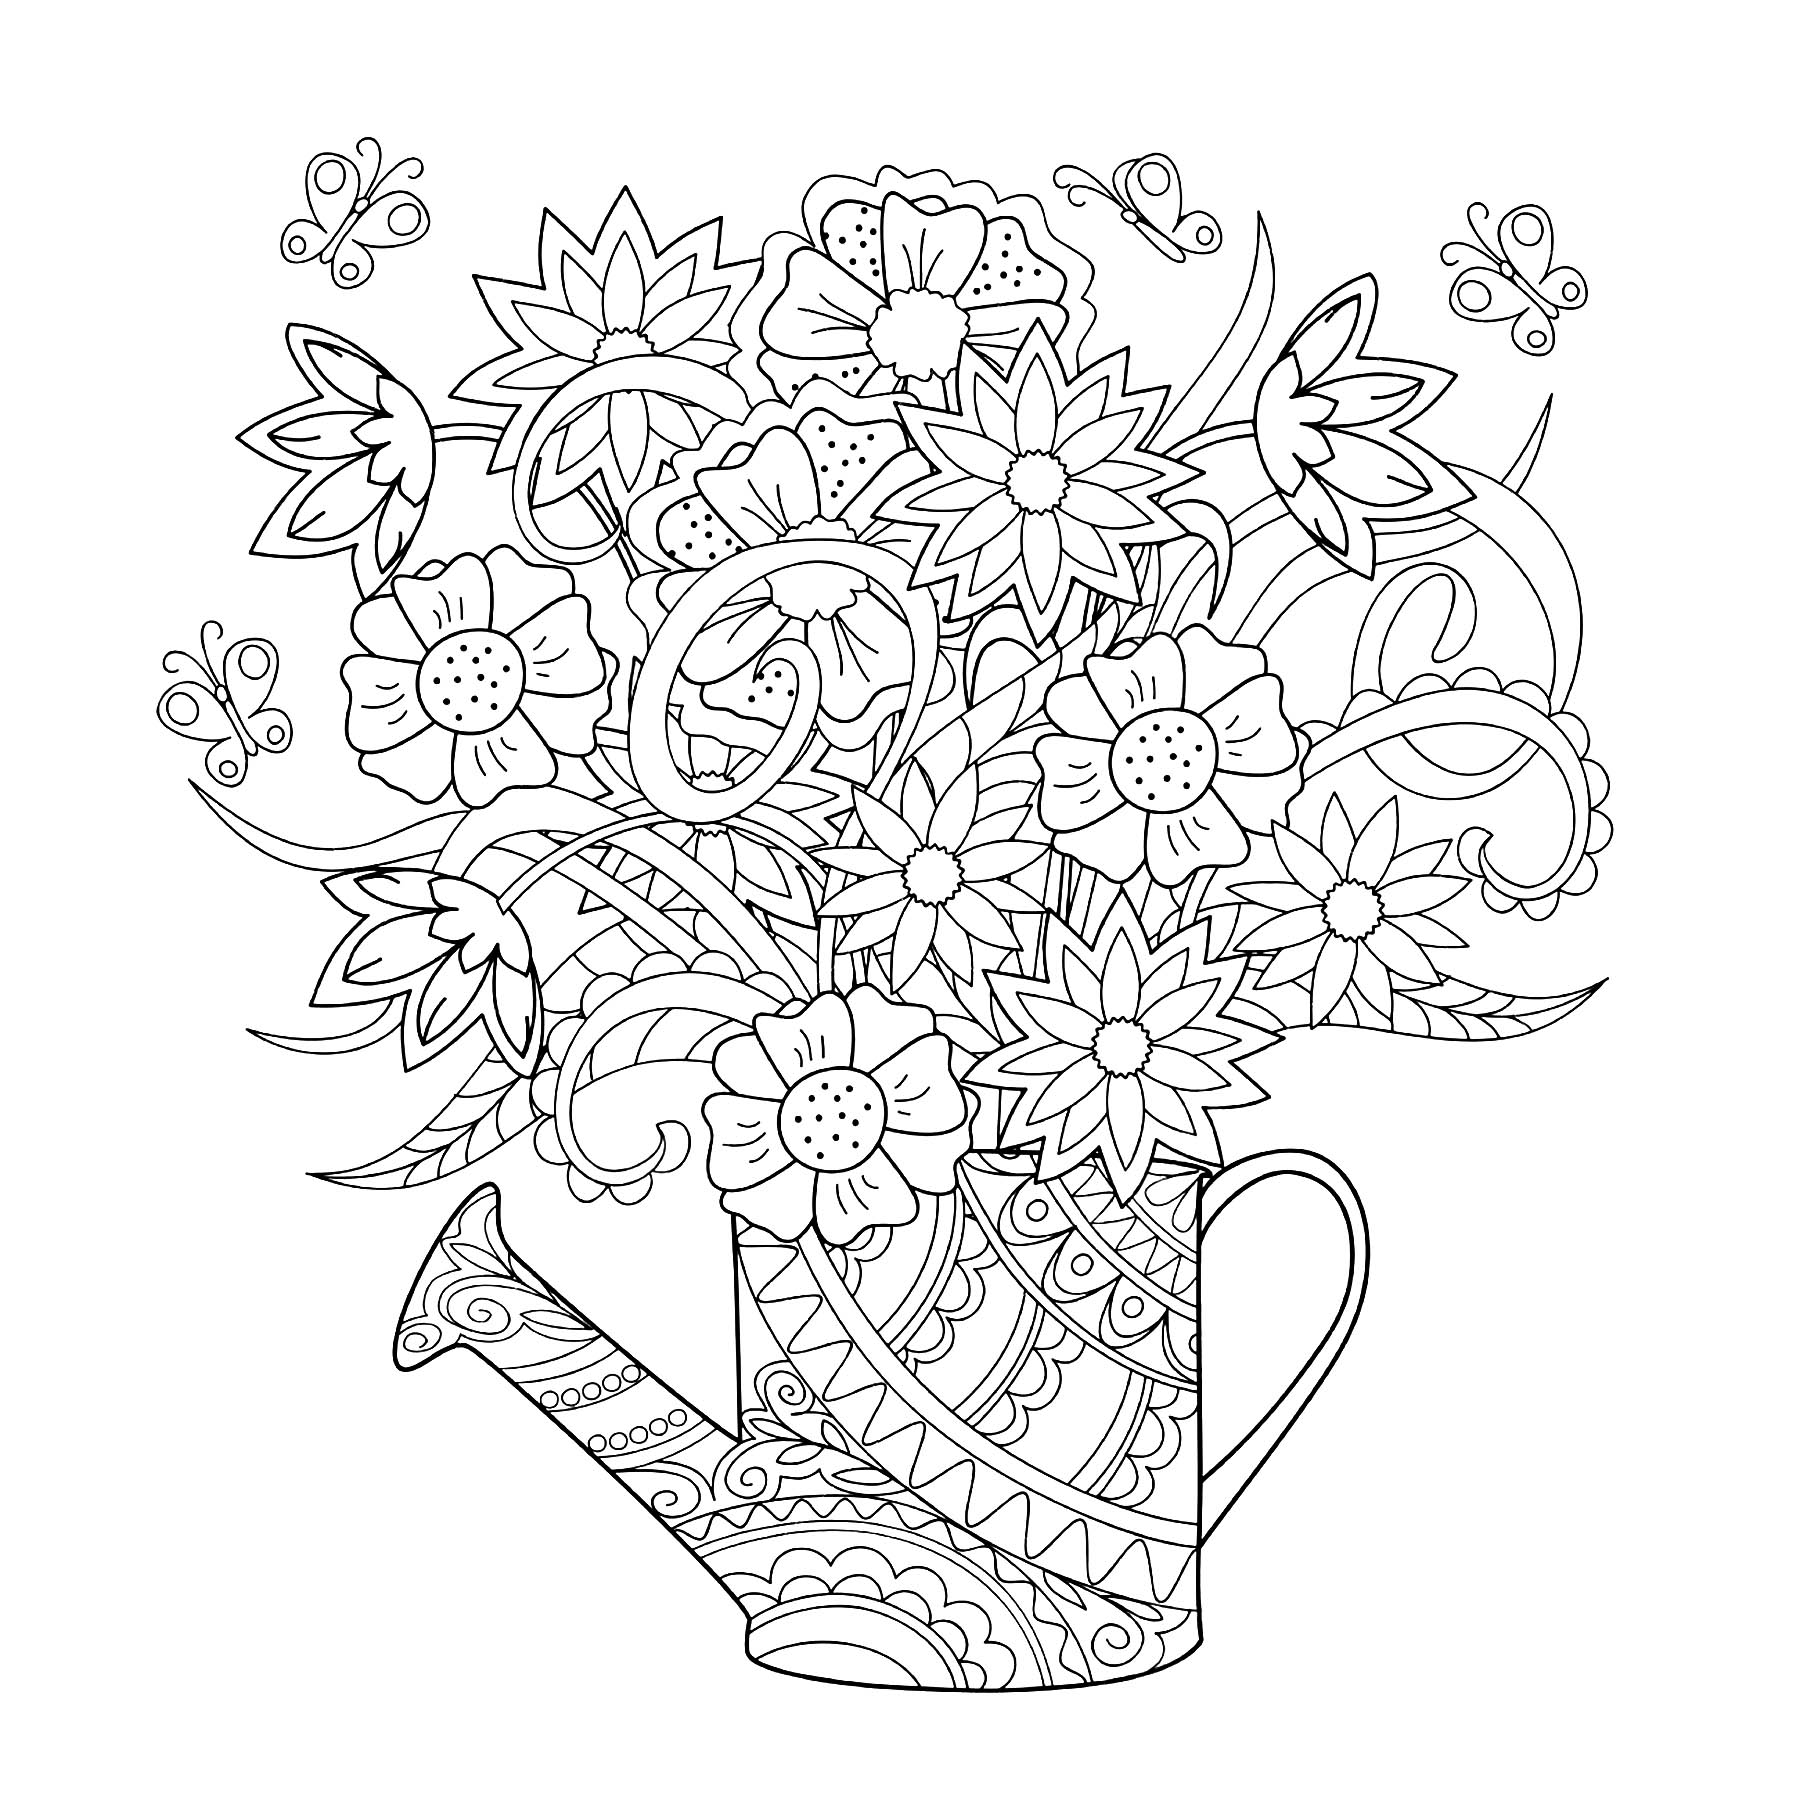 Elegant Watering can with flowers inside, Artist : sliplee   Source : 123rf